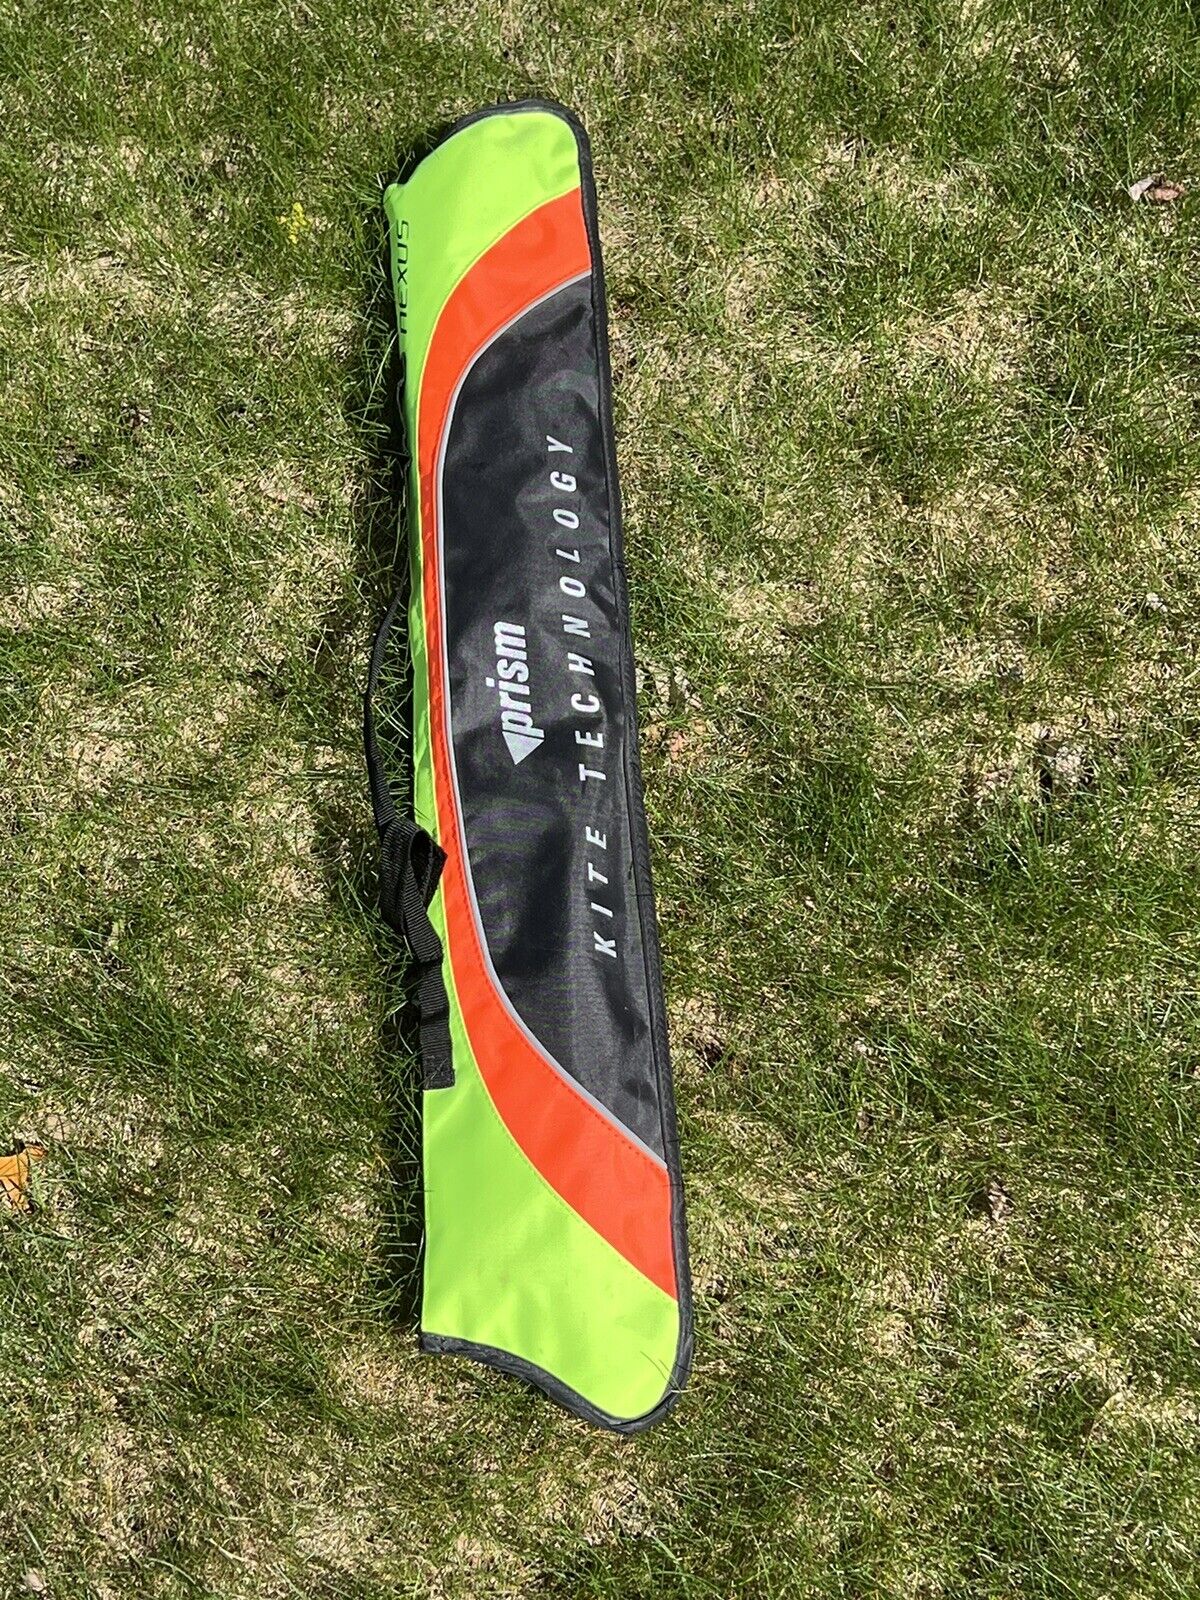 Prism Nexus Sport Stunt Kite - Unopened Brand NEW Red Yellow